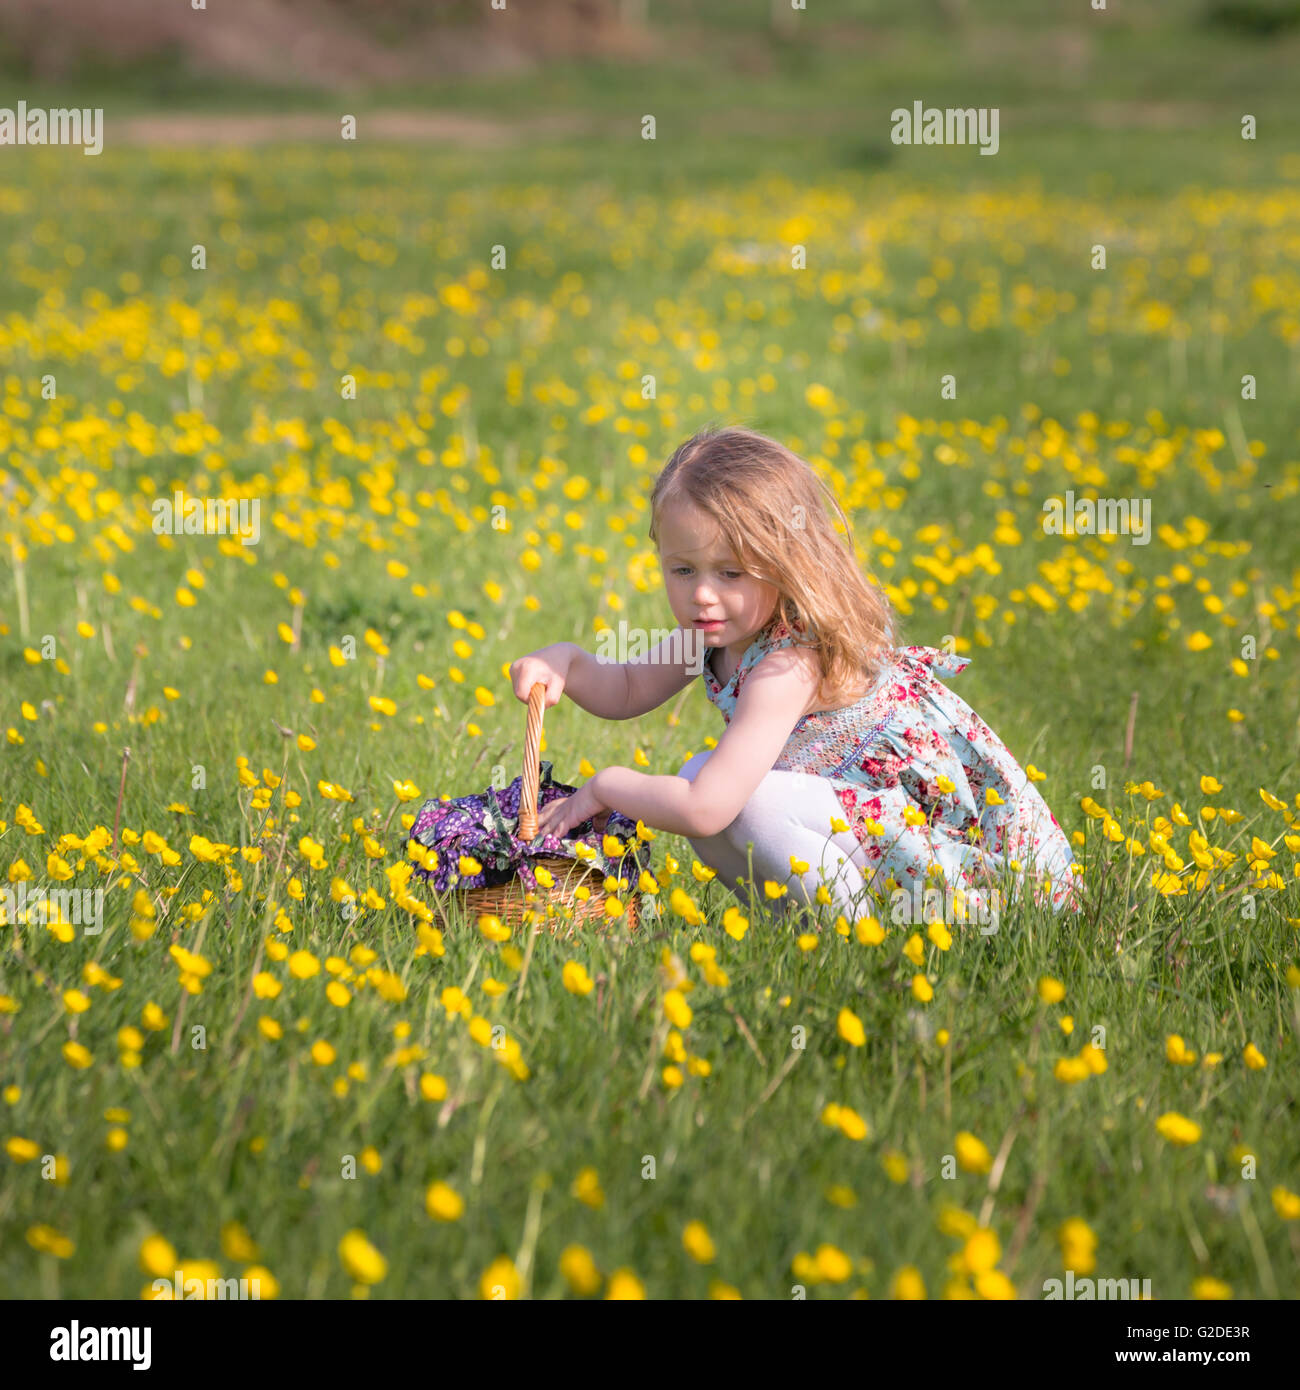 Una niña de 3 años de edad está recogiendo flores amarillas en una cesta Foto de stock